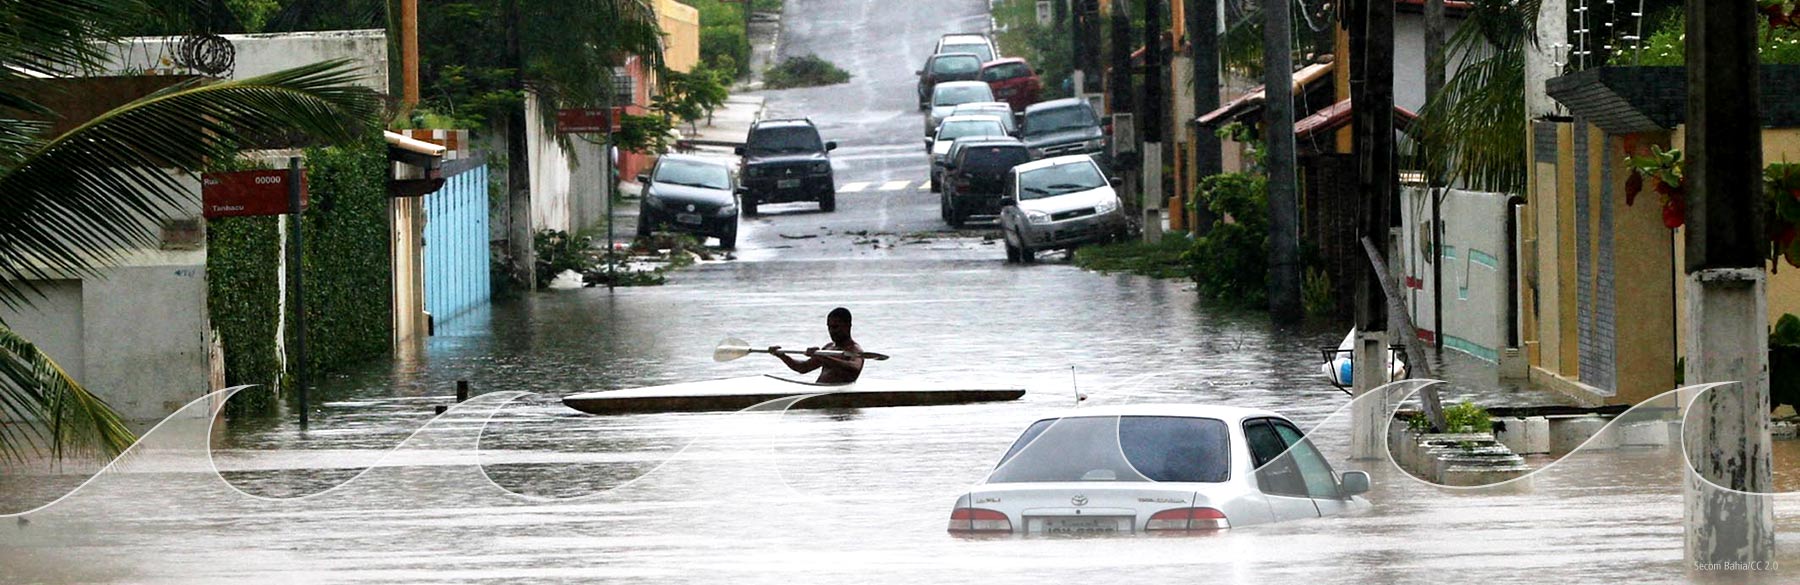 Brazil Flooded Street